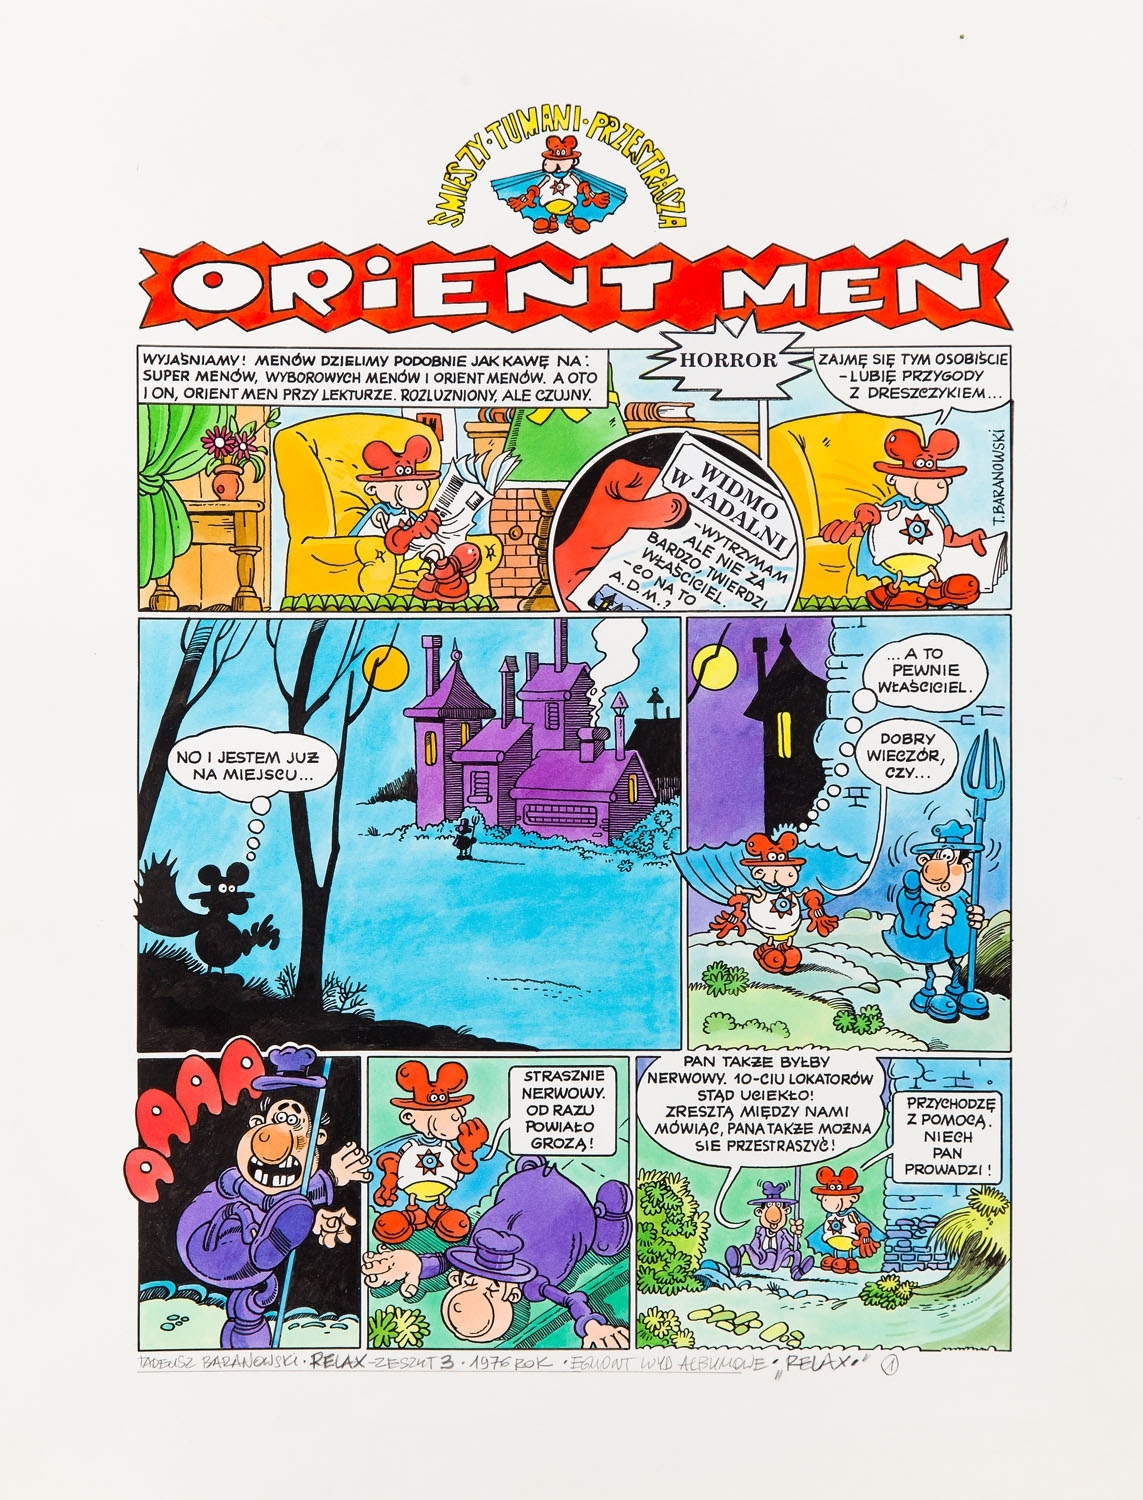 "Orient Men, śmieszy, tumani, przestrasza", comic splash no. 1 by Tadeusz Baranowski, 1976